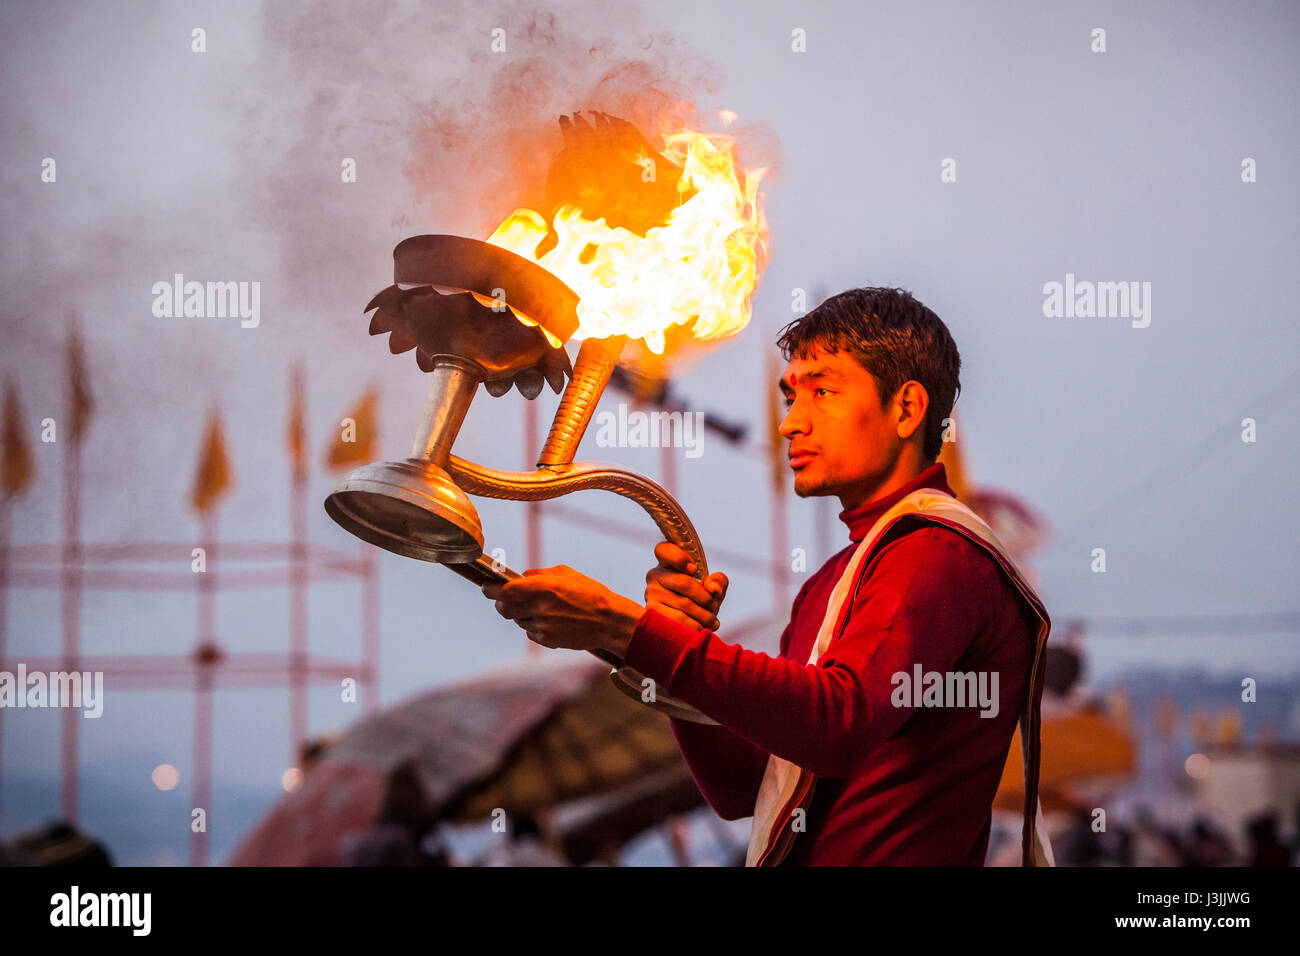 Ein Hindu Priester an den Ufern des Ganges / Fluss Ganges in Varanasi, Indien führt eine Zeremonie (Puja) mit einer Öllampe. Stockfoto